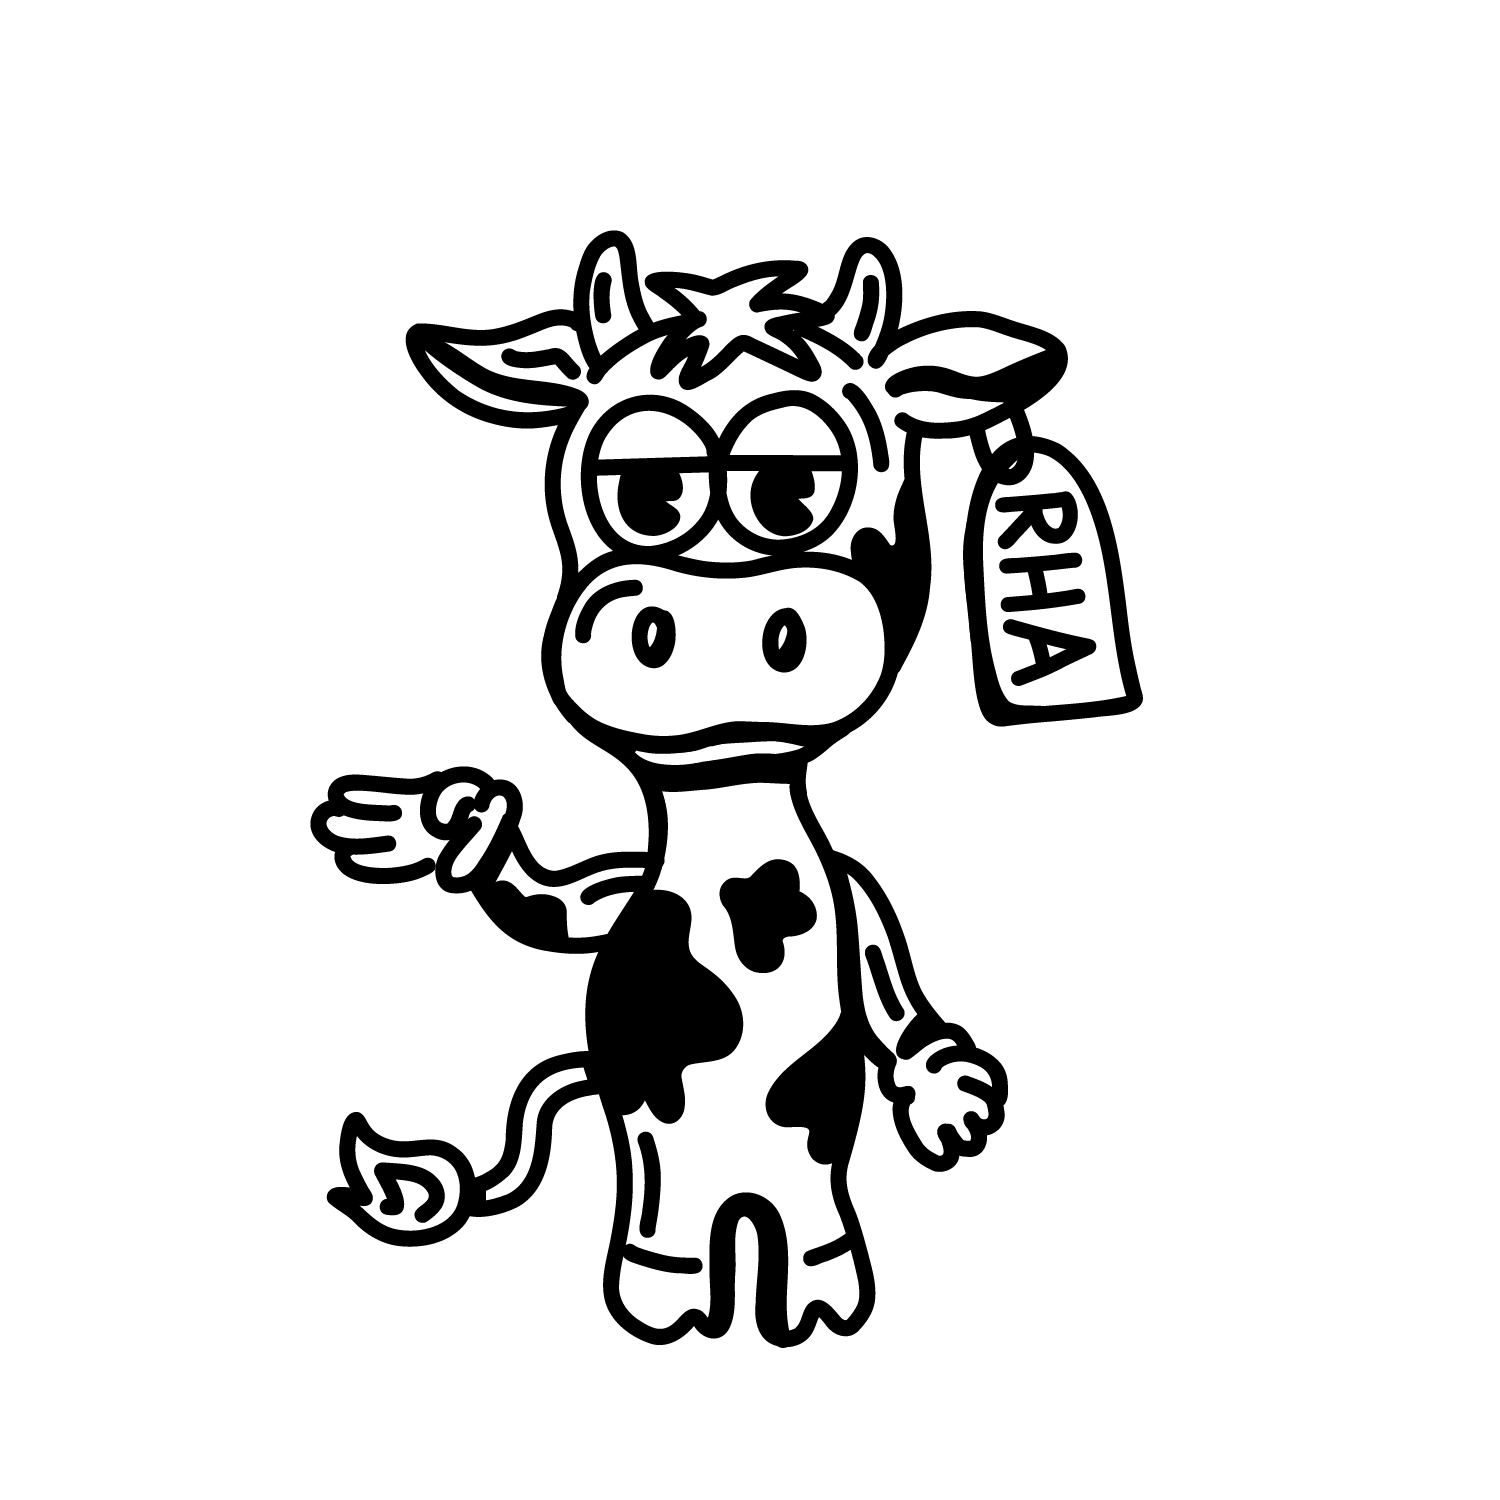 Cecilia the Cow